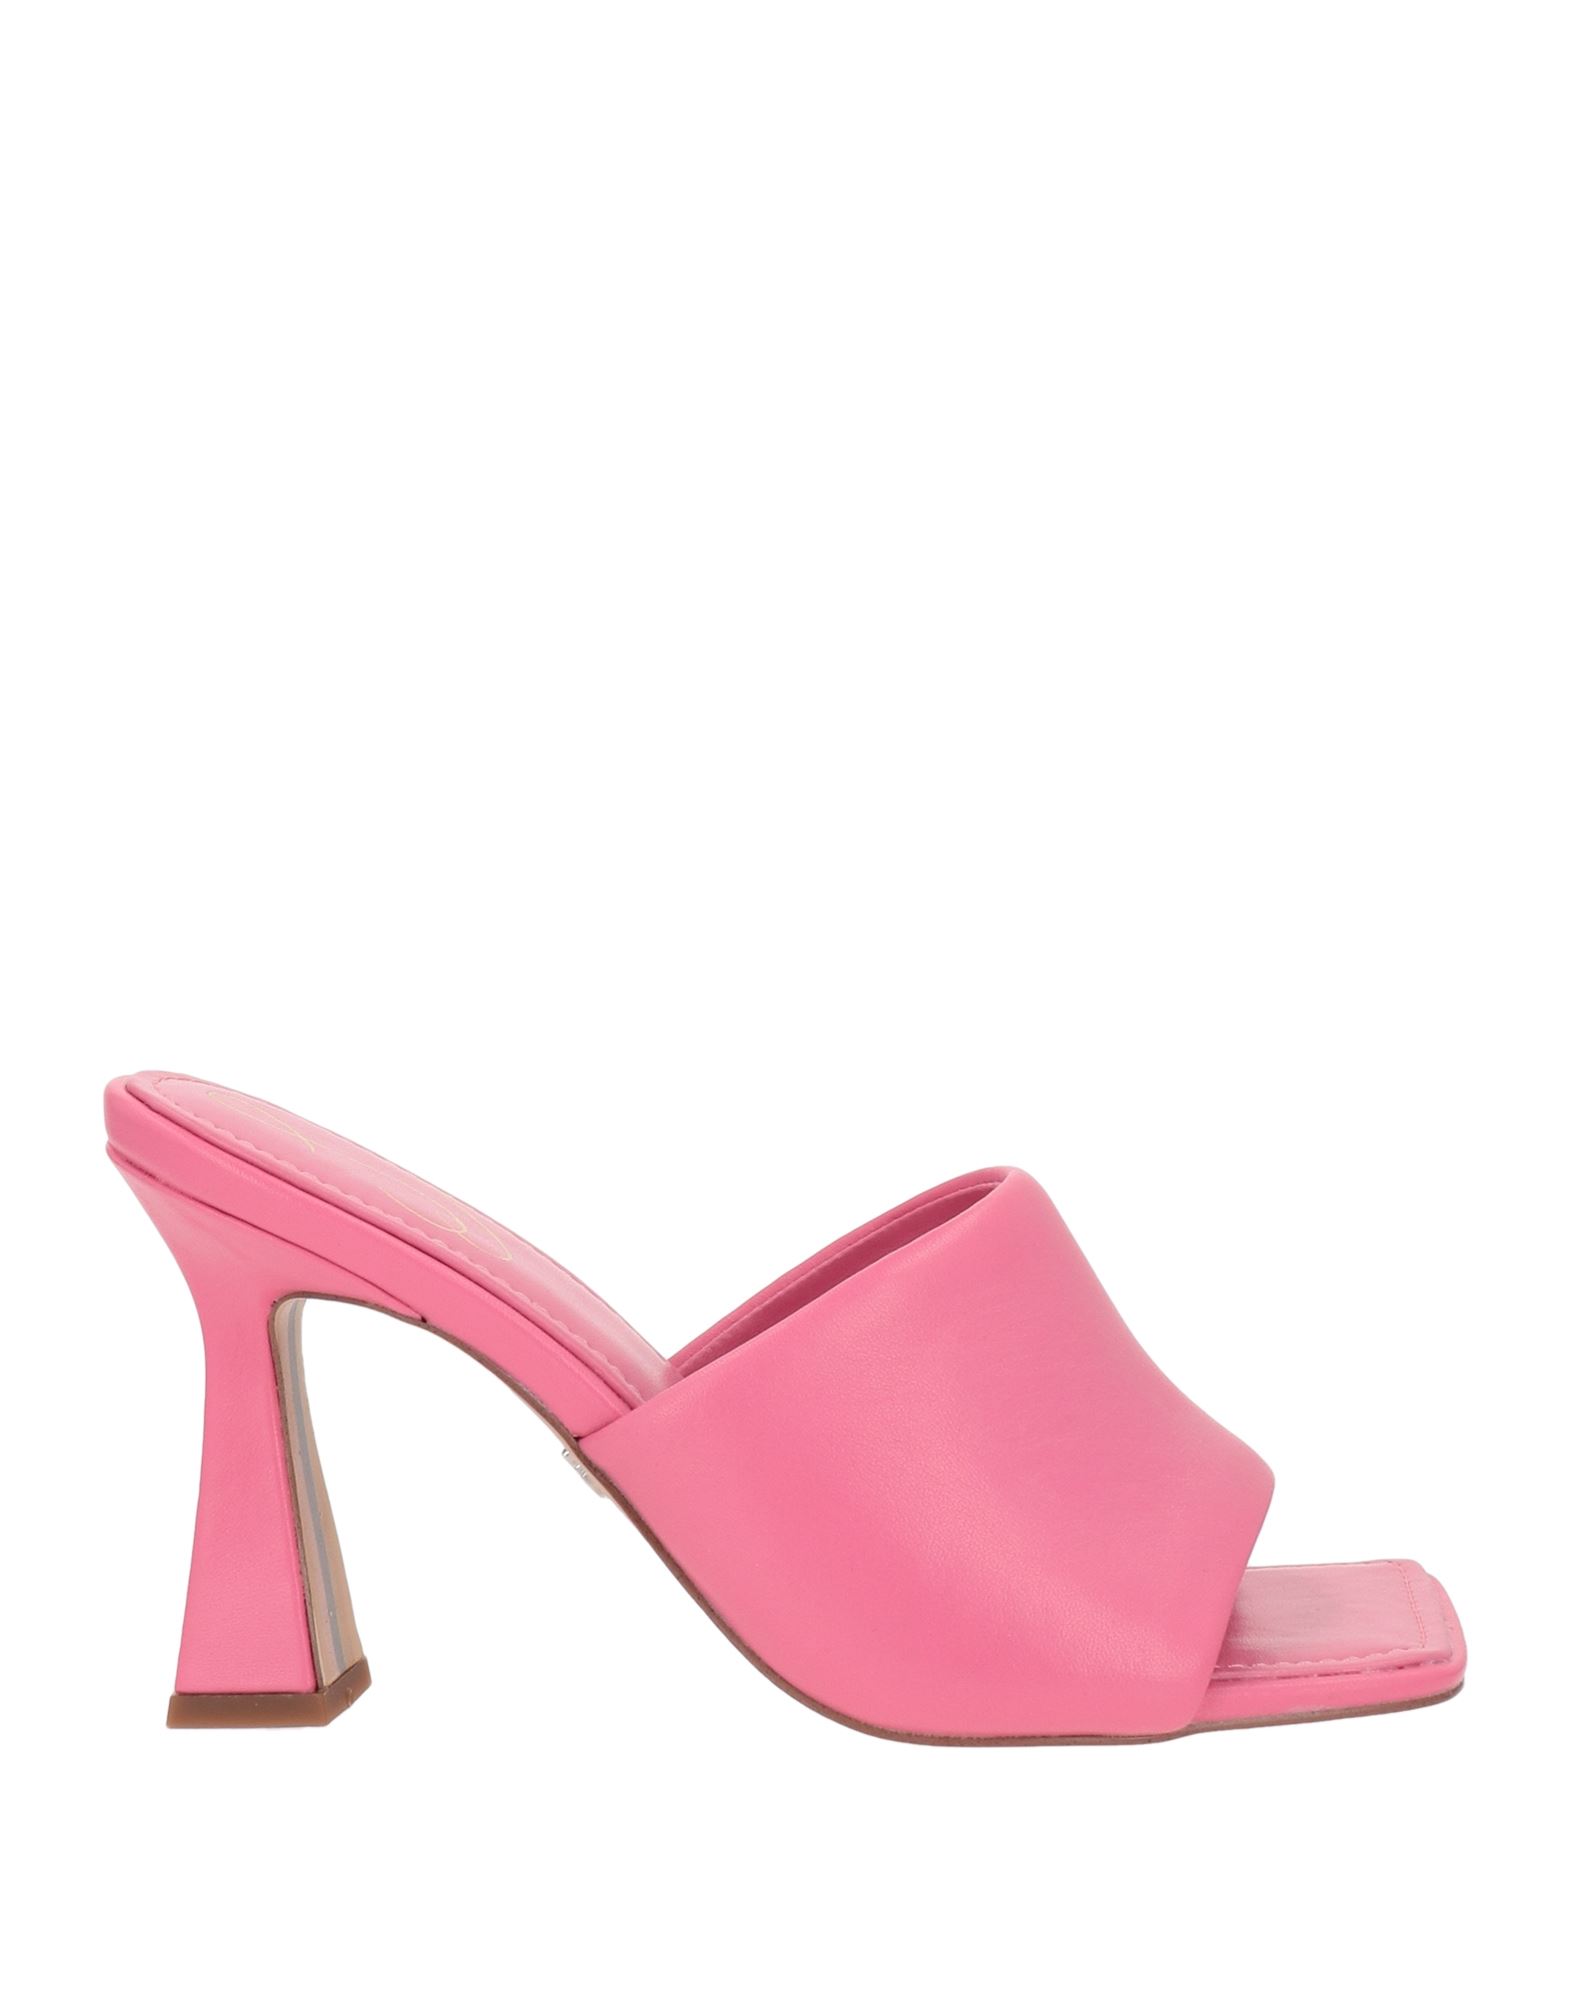 Sam Edelman Sandals In Pink